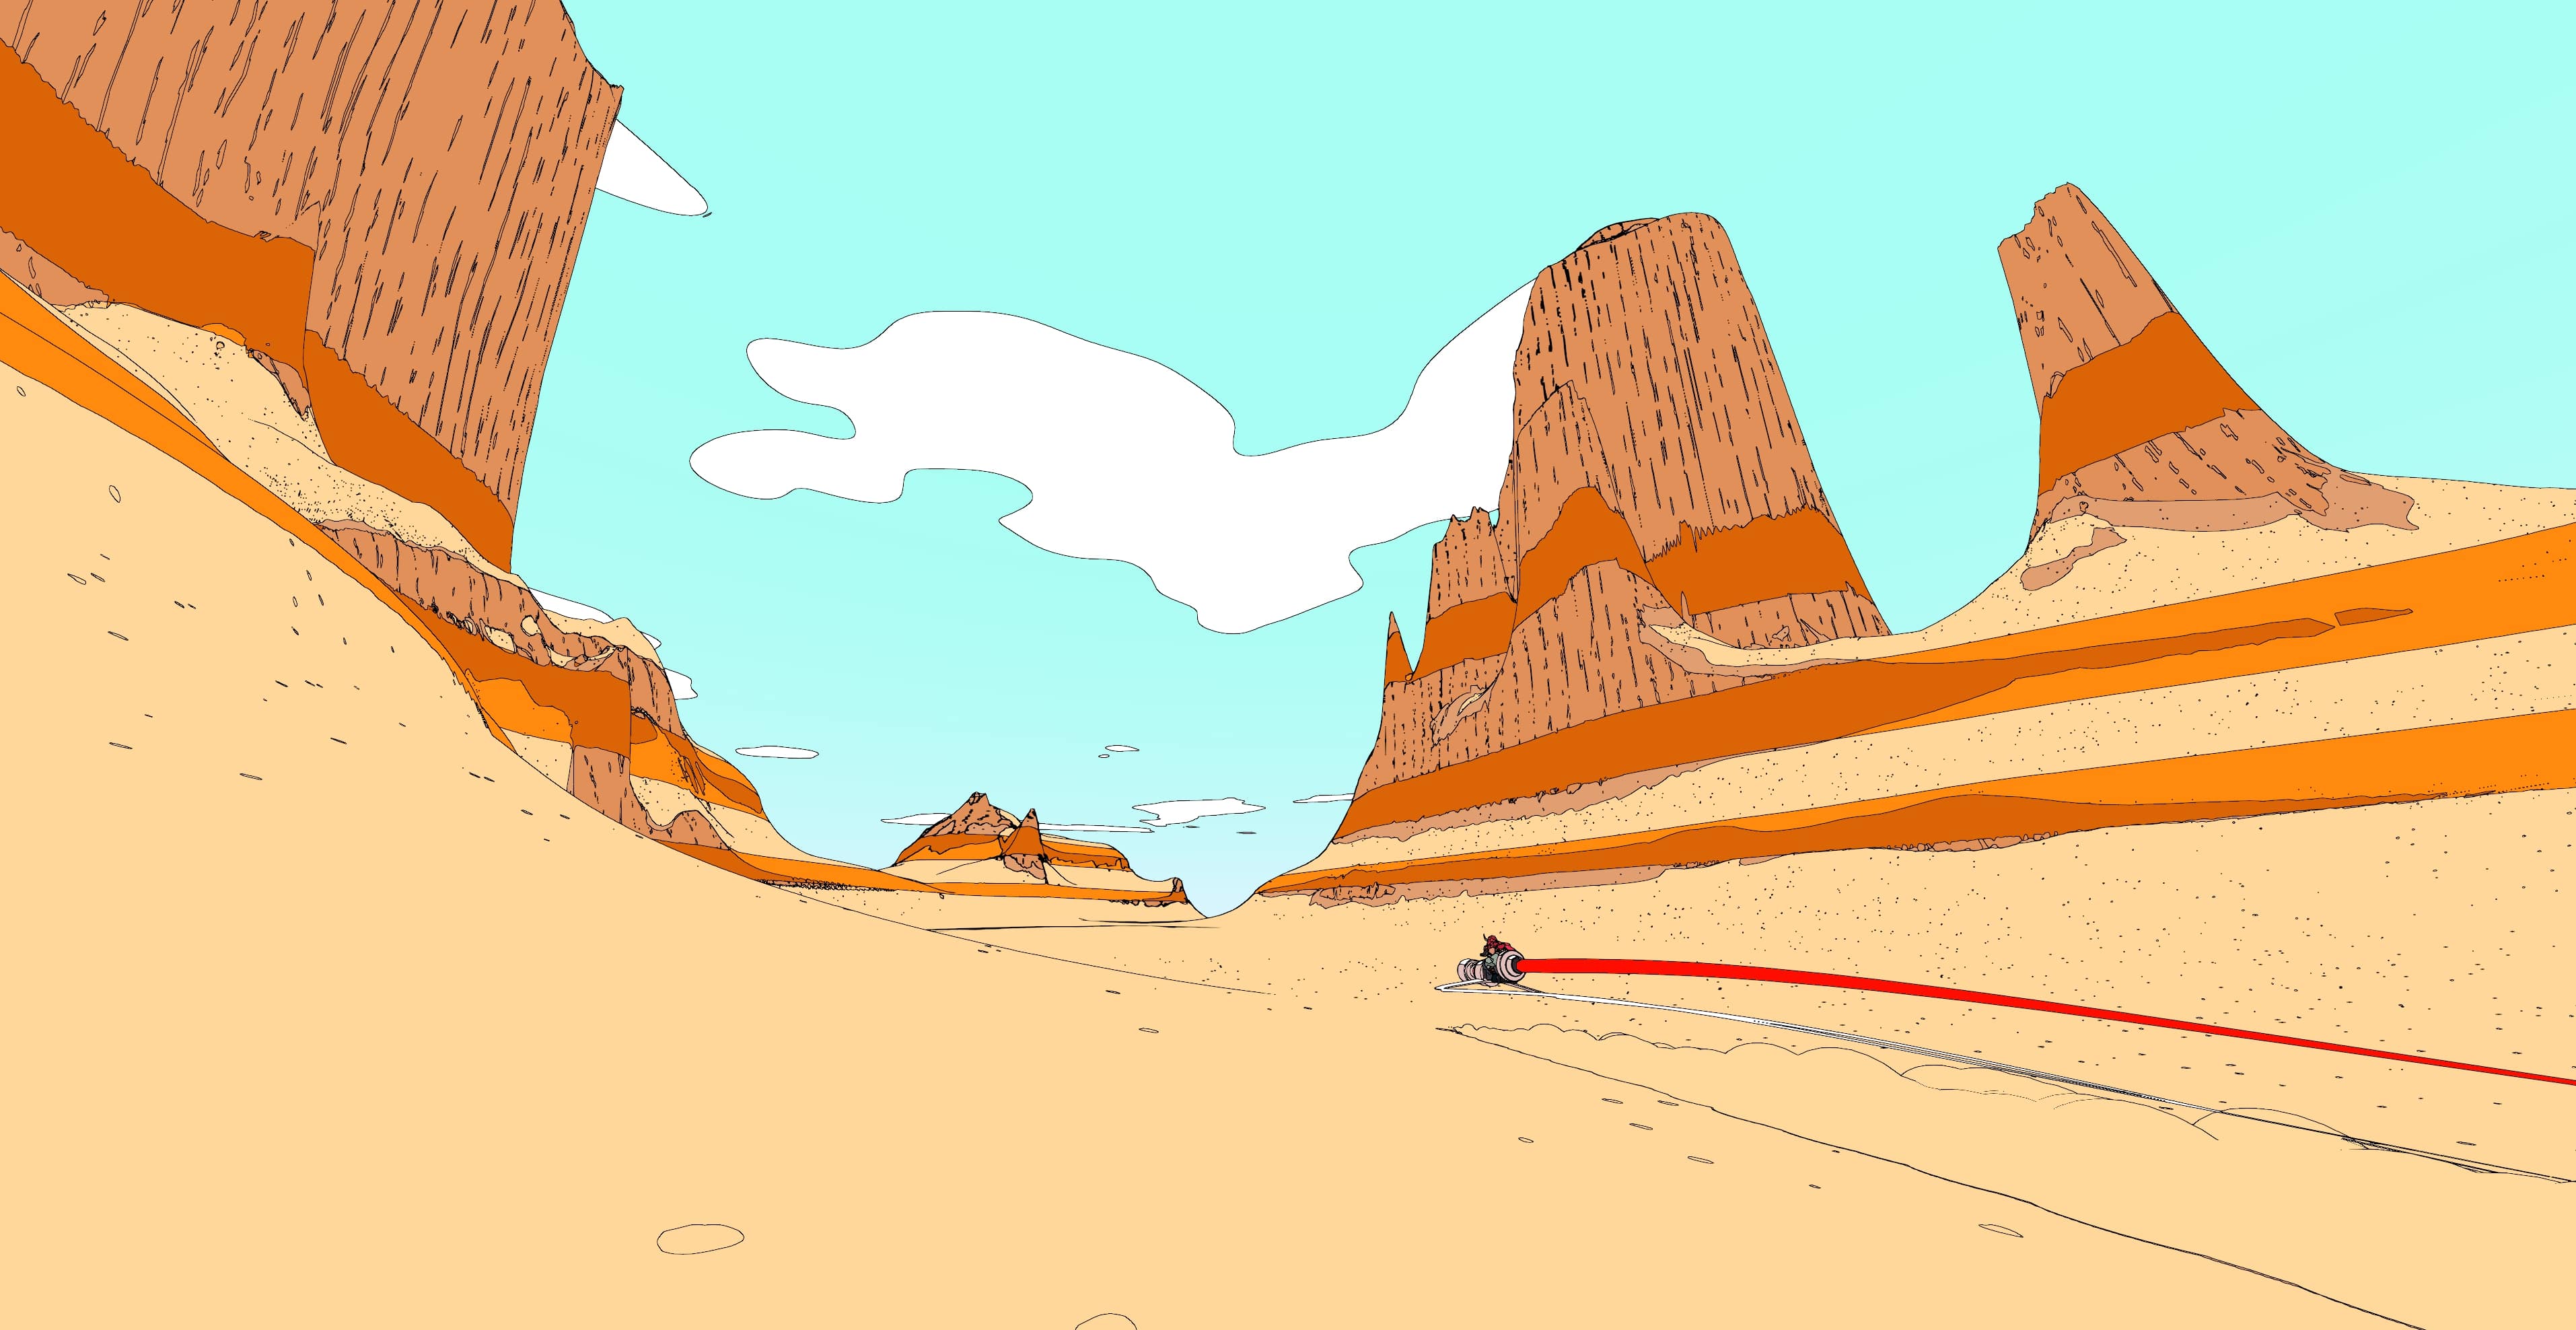 Sable atravessa o deserto em um planador.